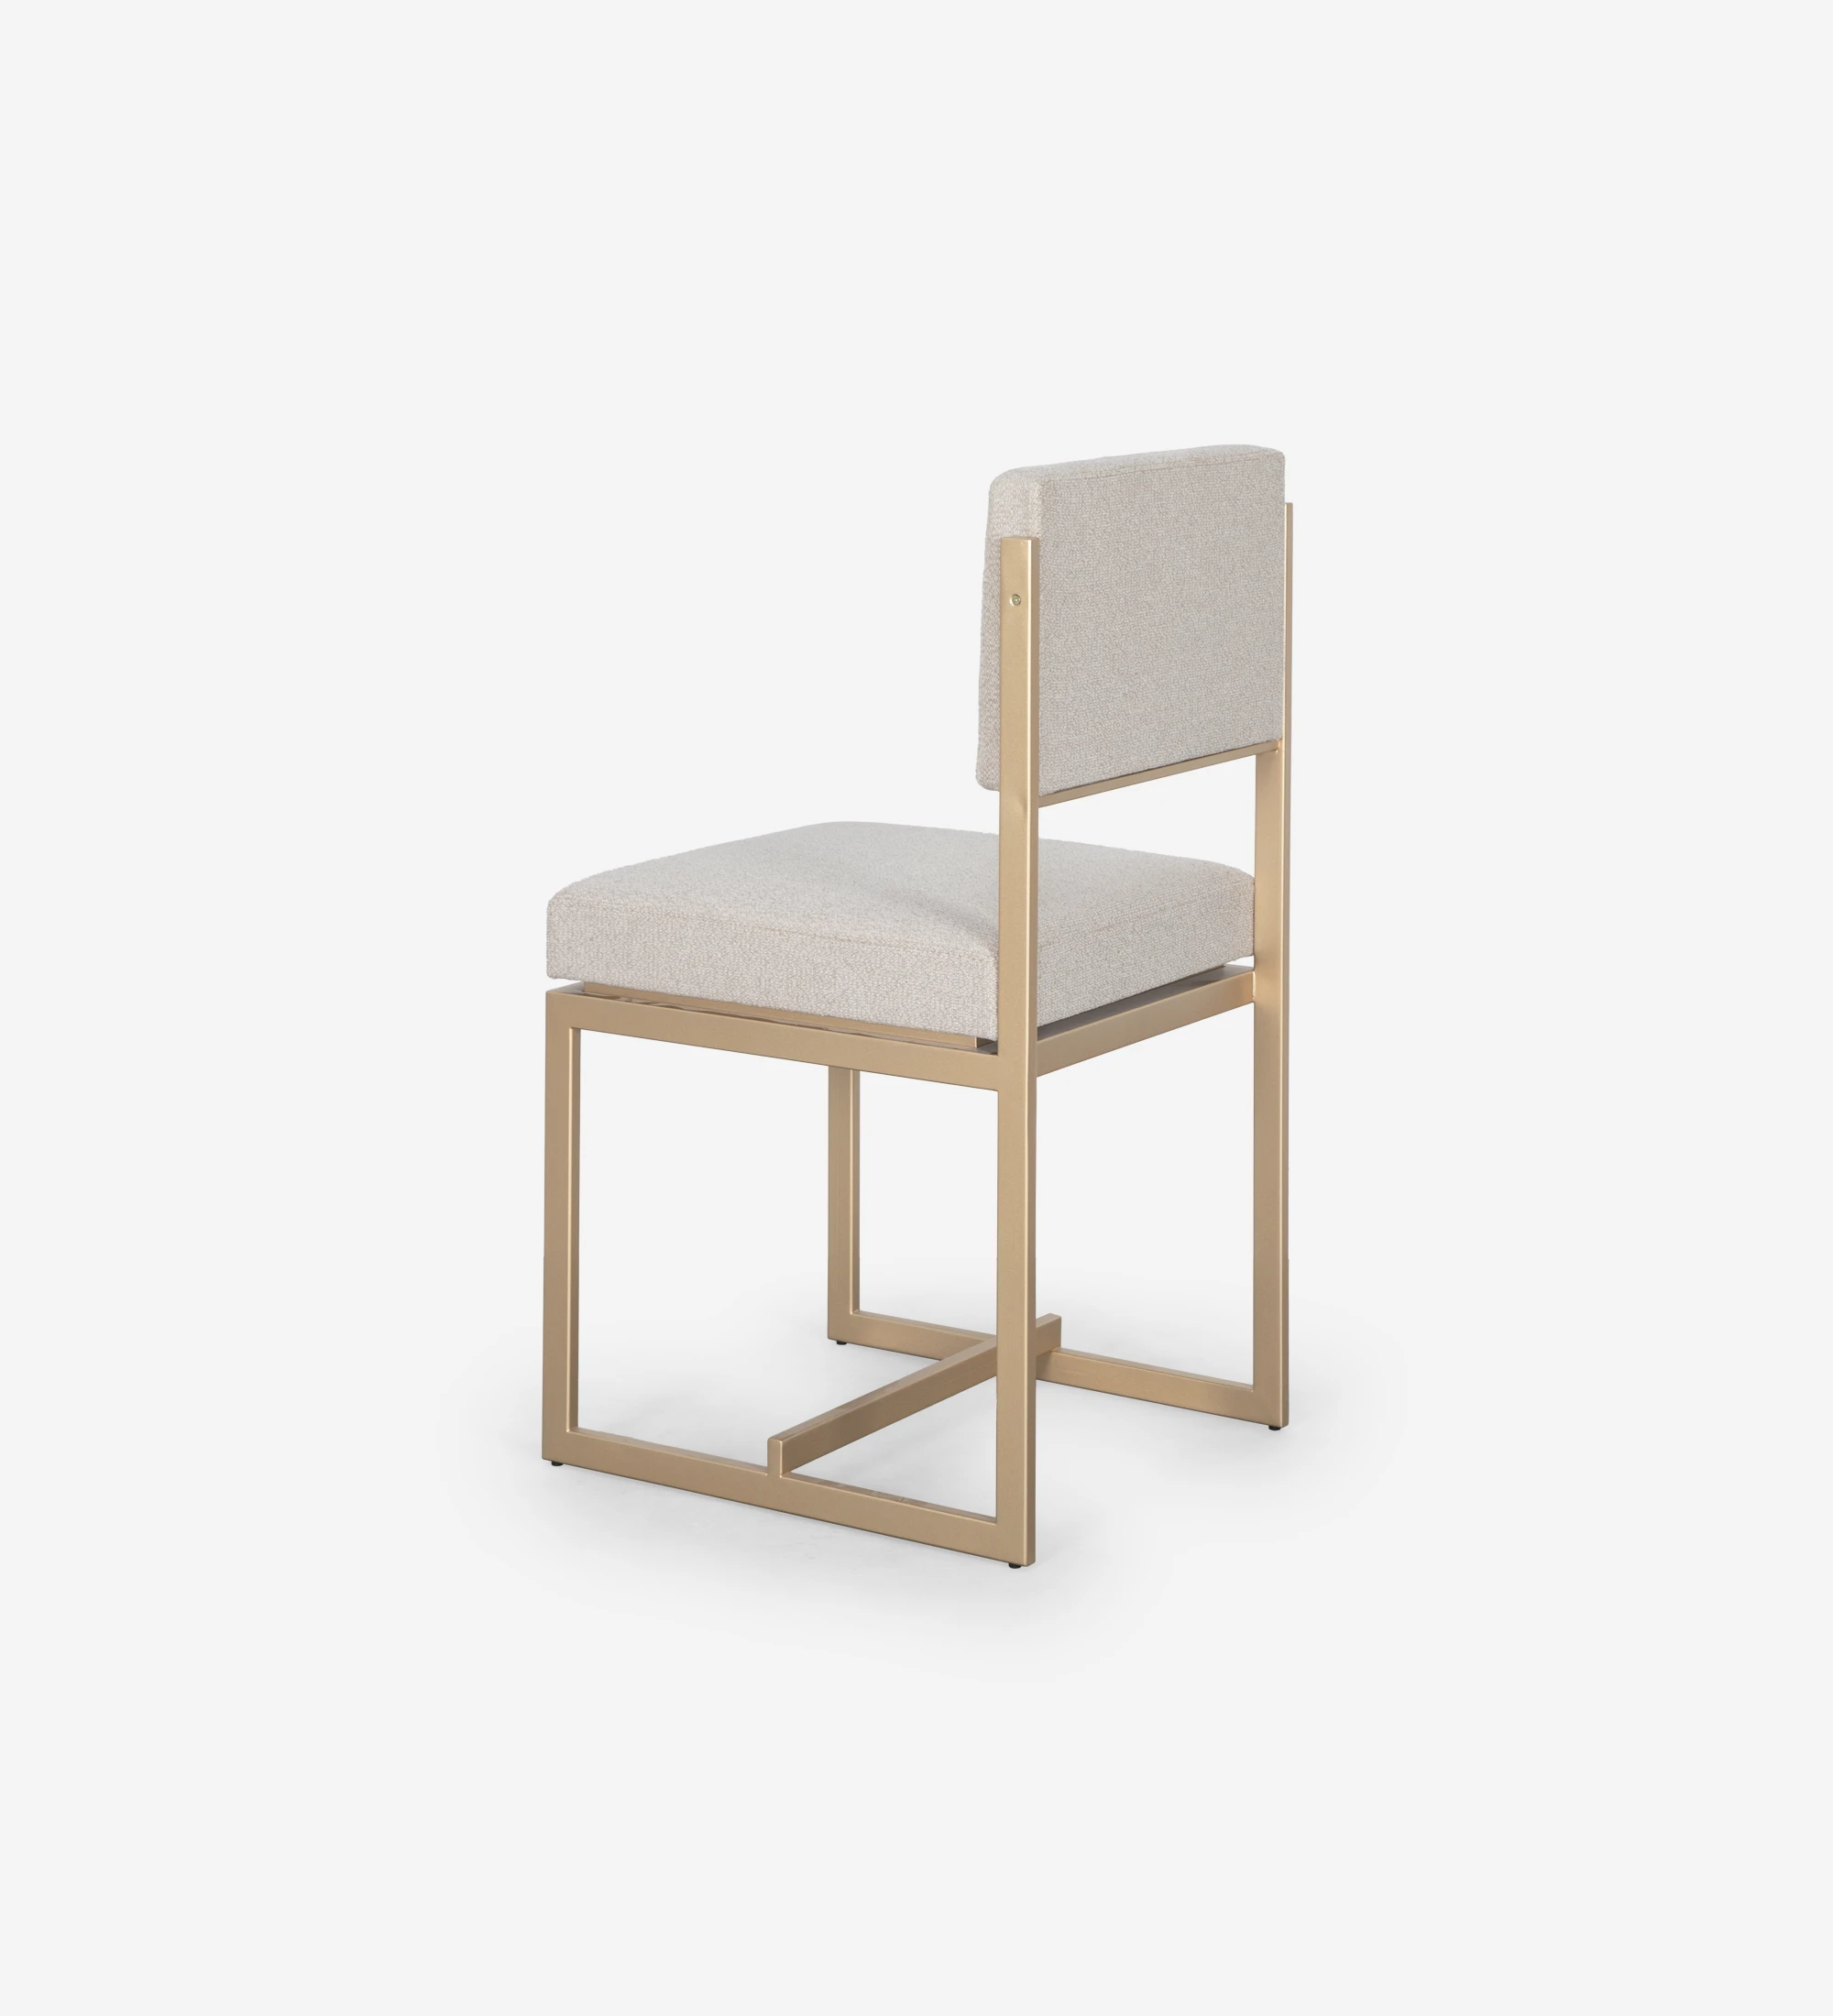 Chaise avec assise et dossier recouverts de tissu, avec structure en métal laqué doré